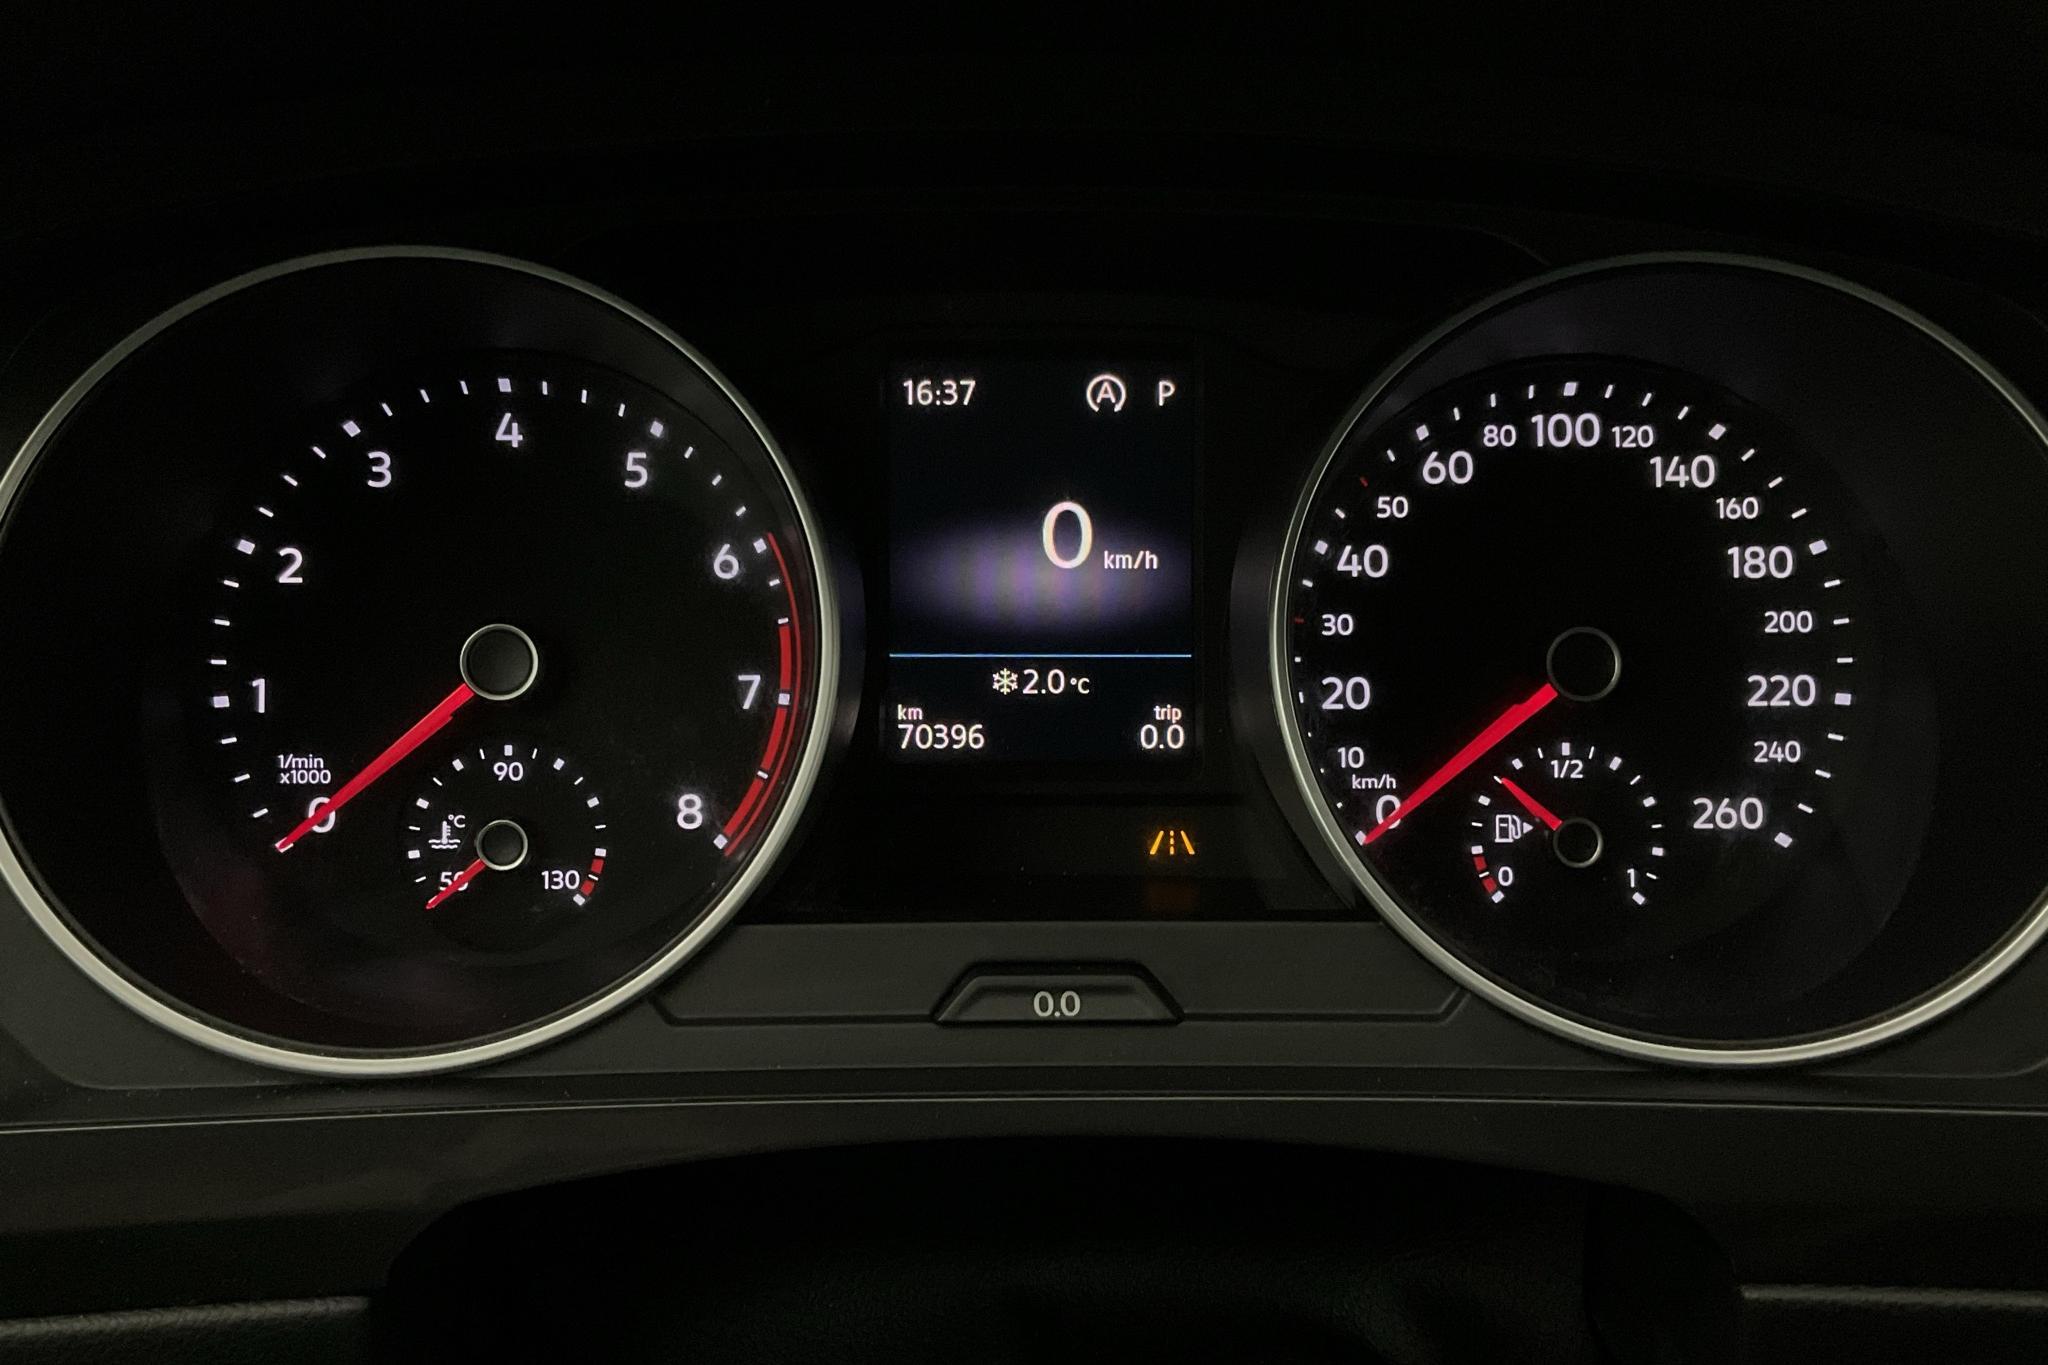 VW Tiguan 1.4 TSI 4MOTION (150hk) - 70 390 km - Automatic - silver - 2018